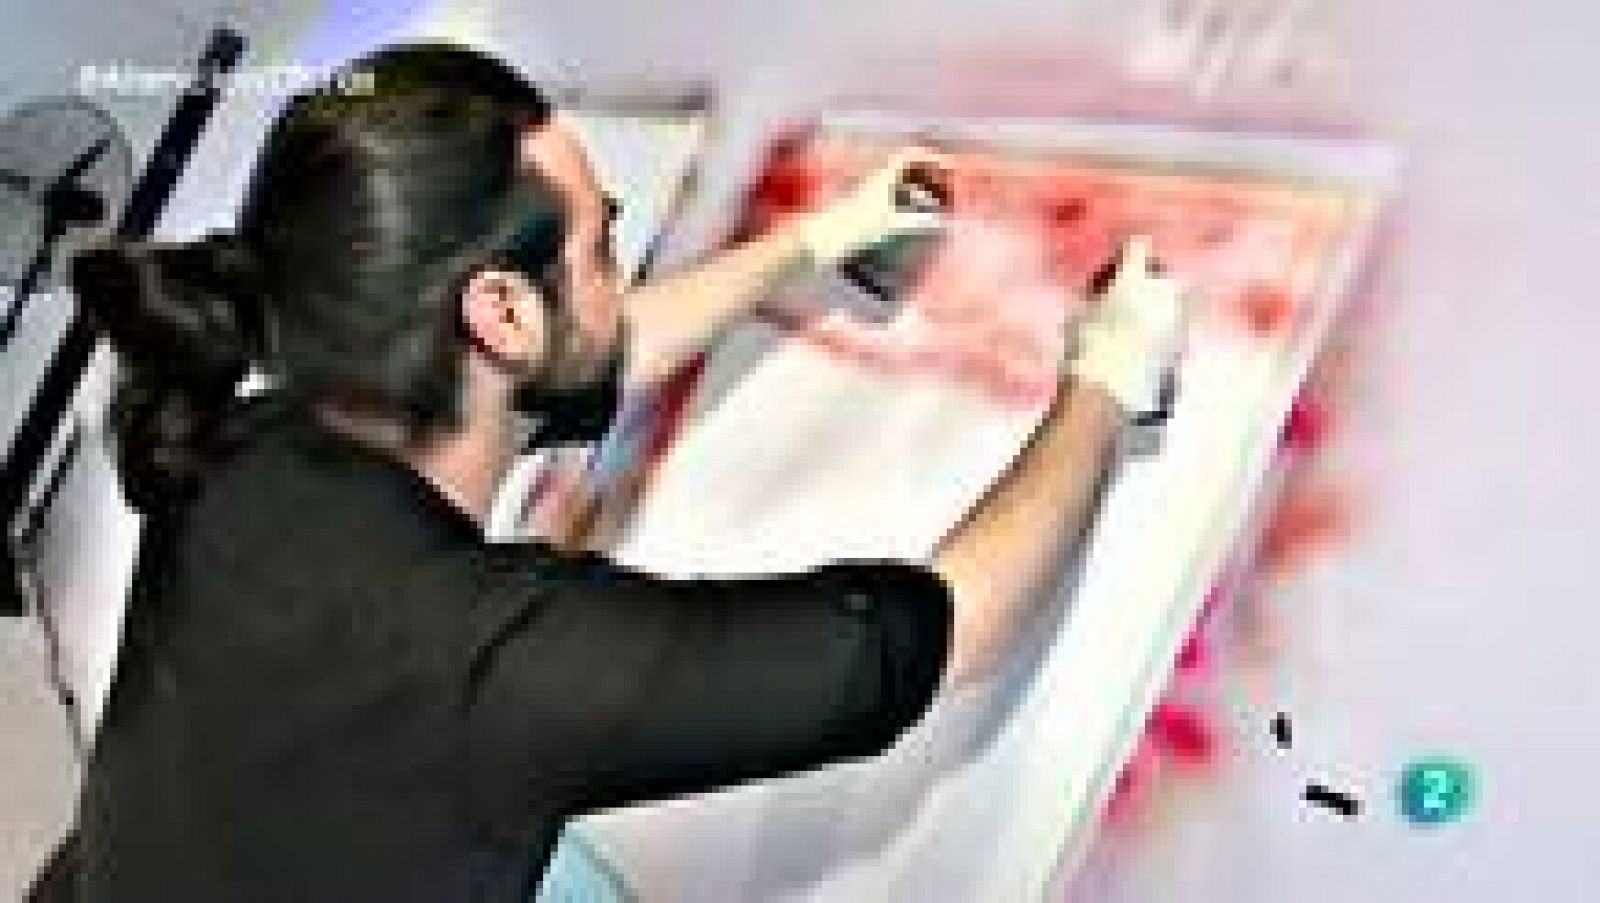 Atención obras: Suso 33, grafiti antiestrés | RTVE Play